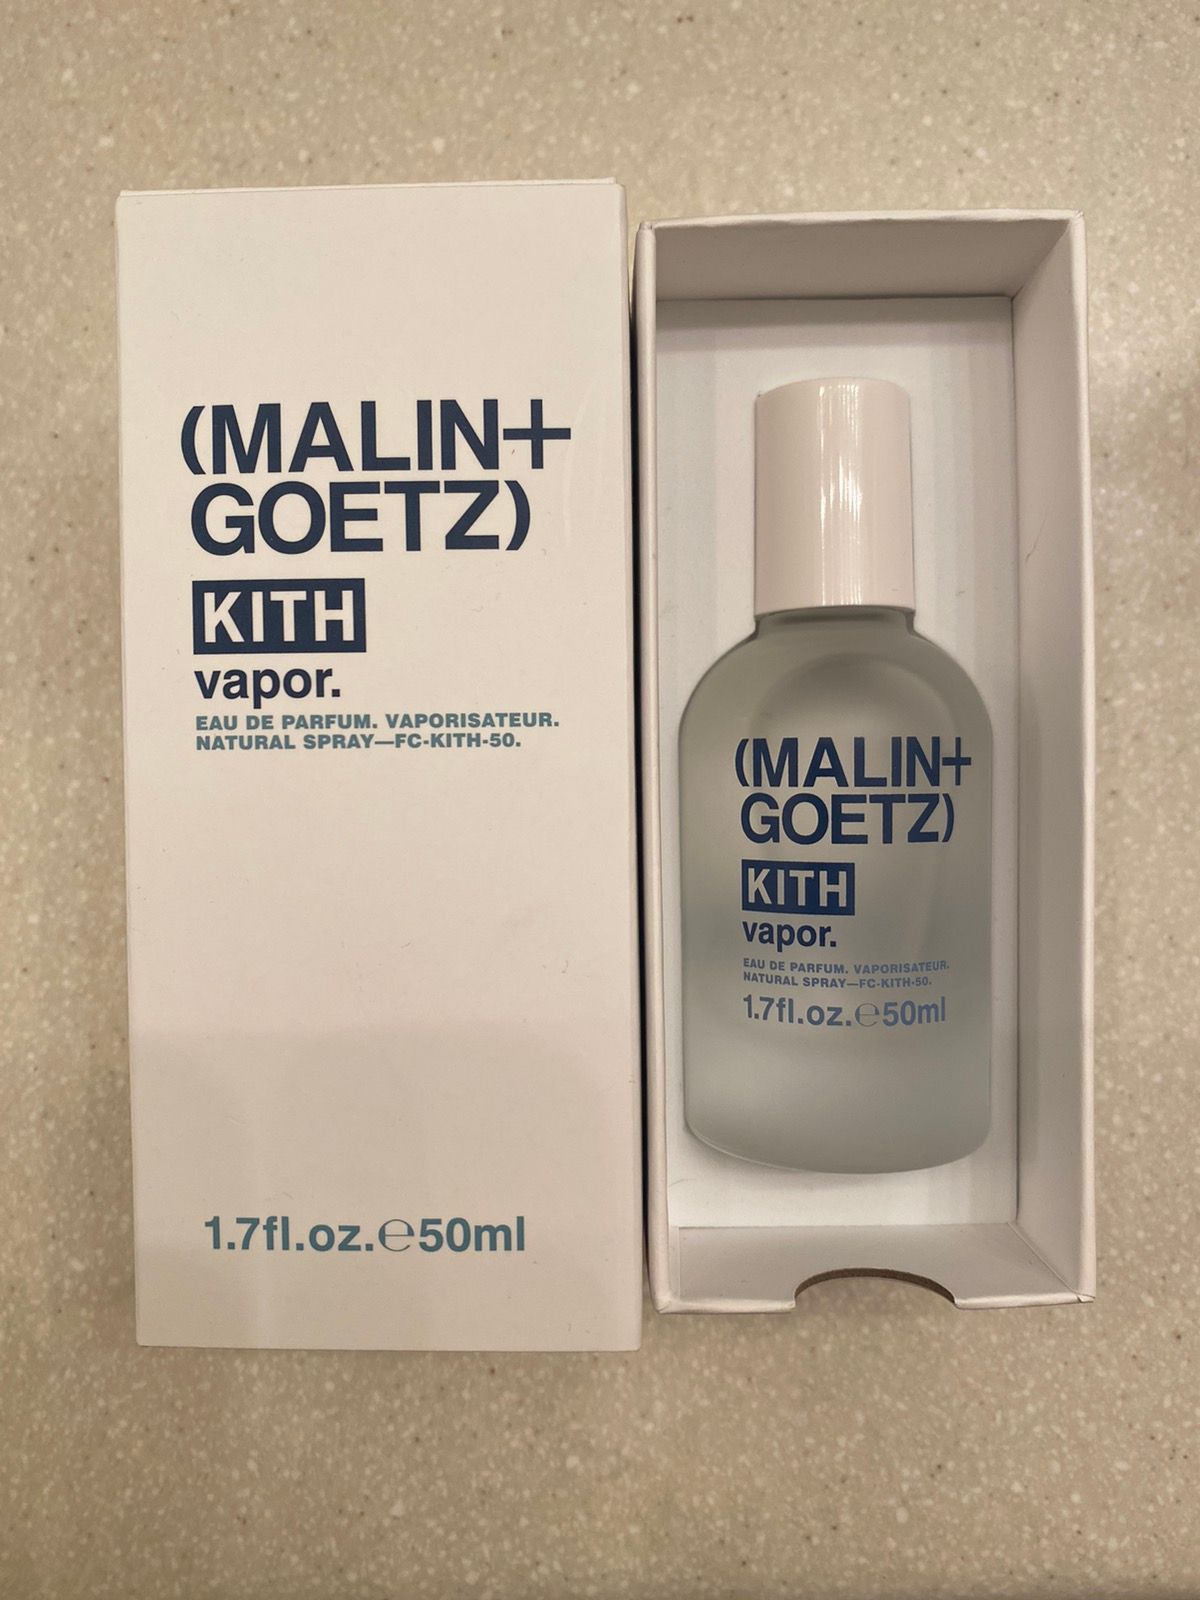 Kith Kith Malin Goetz Vapor Eau De Parfum Fragrance Perfume 50ml